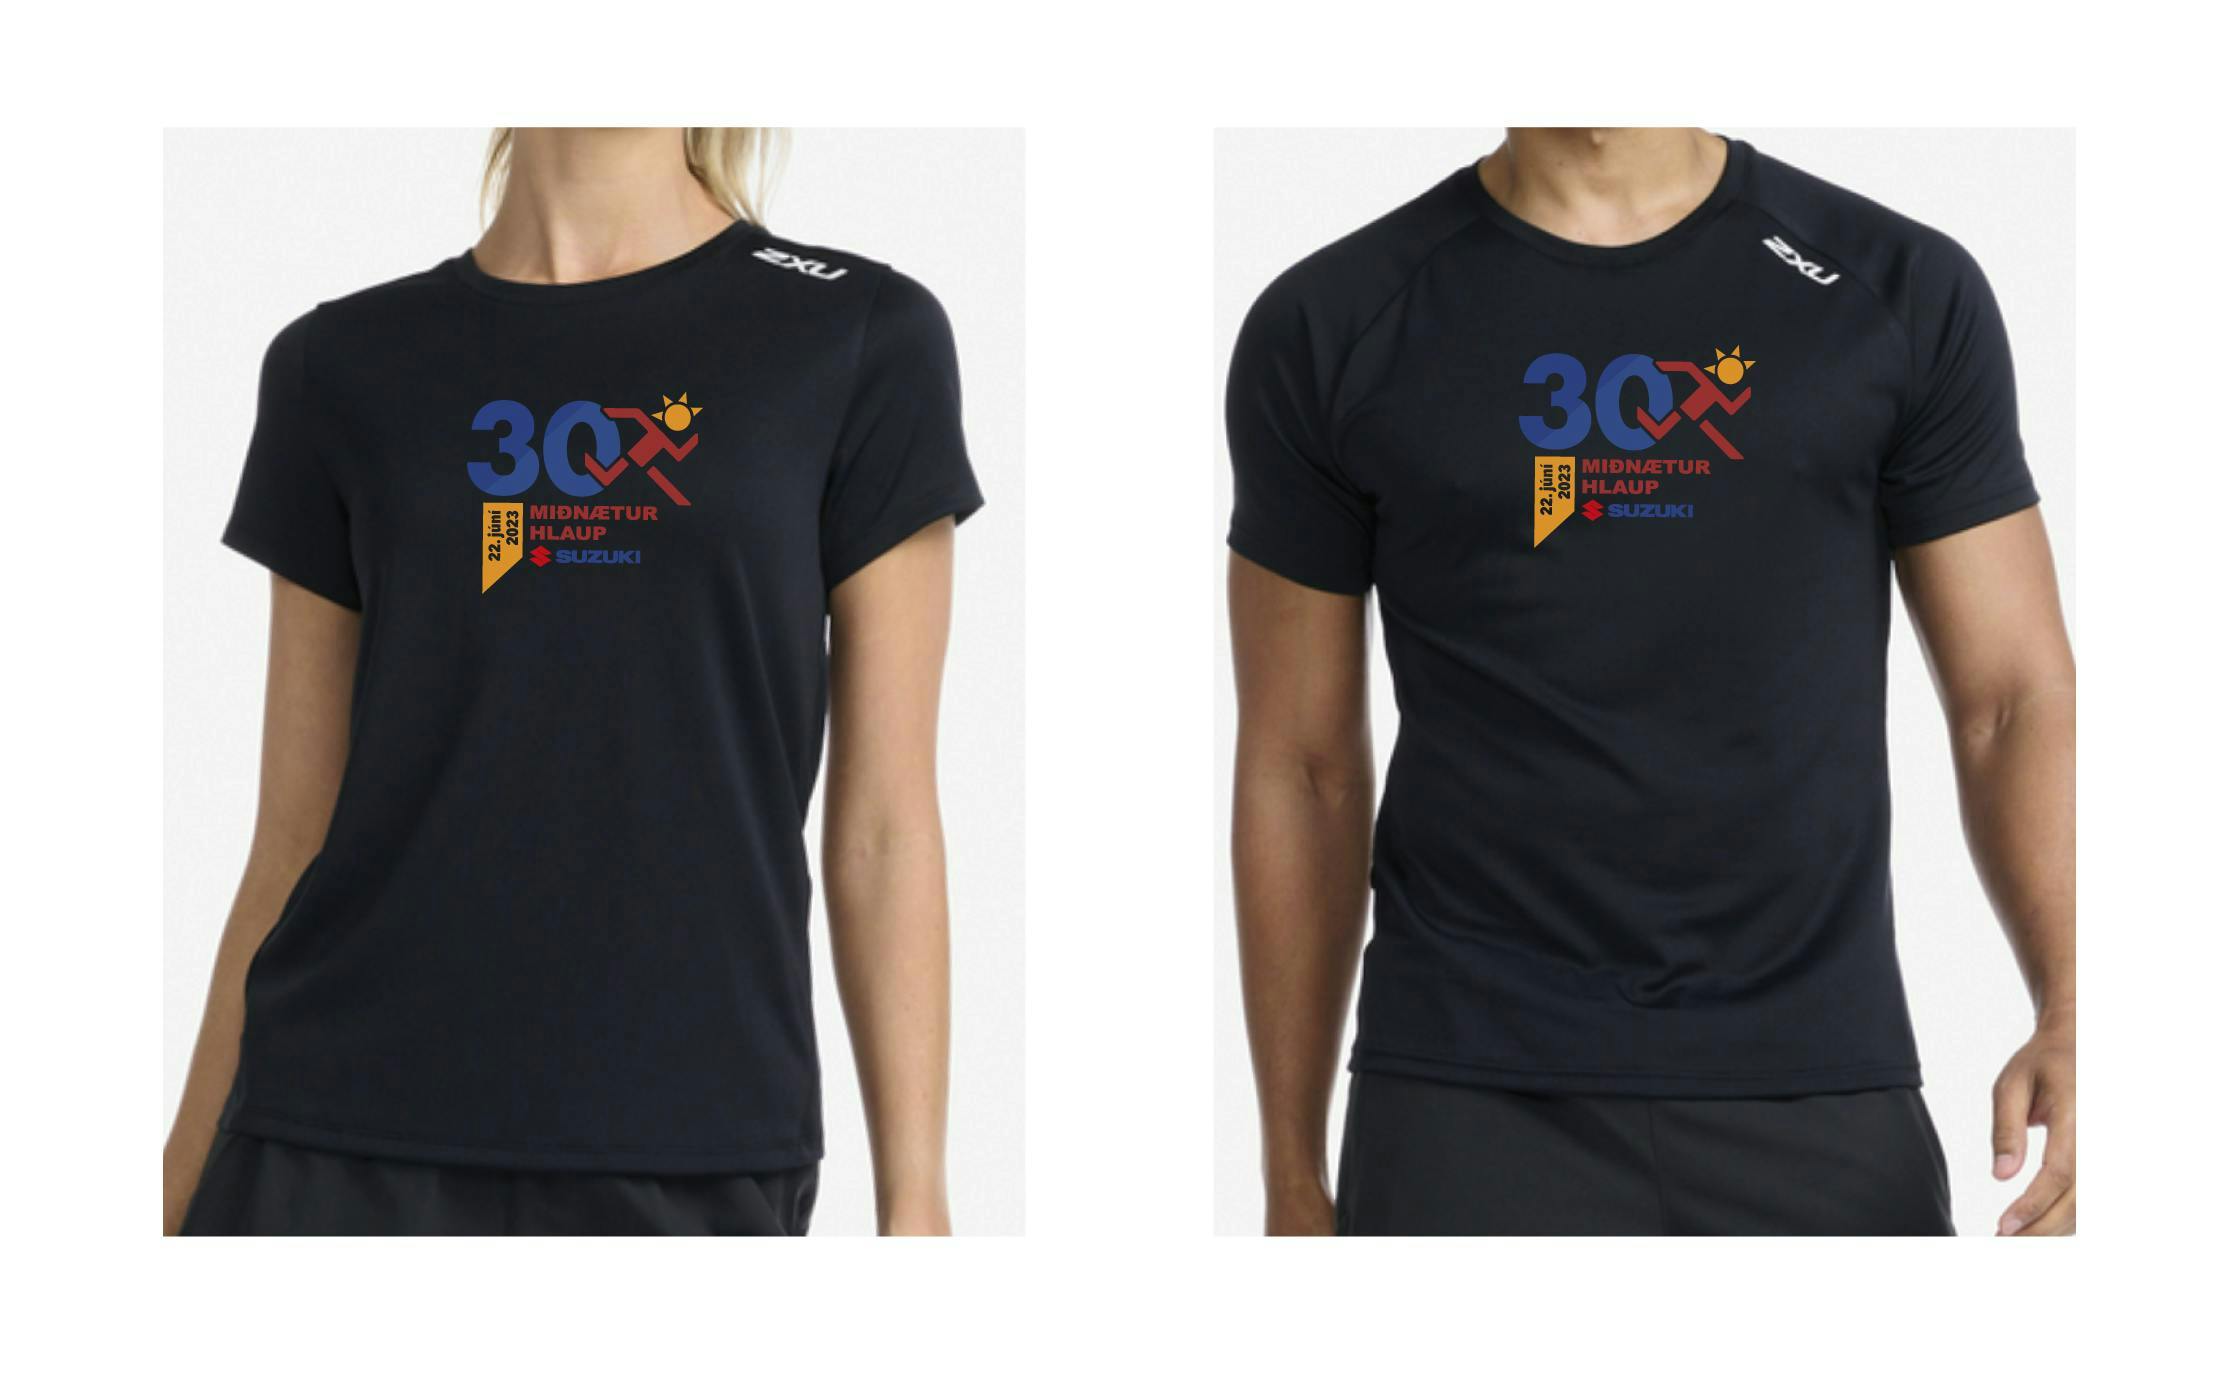 Black 2XU t-shirt with the run's 30th anniversary logo.